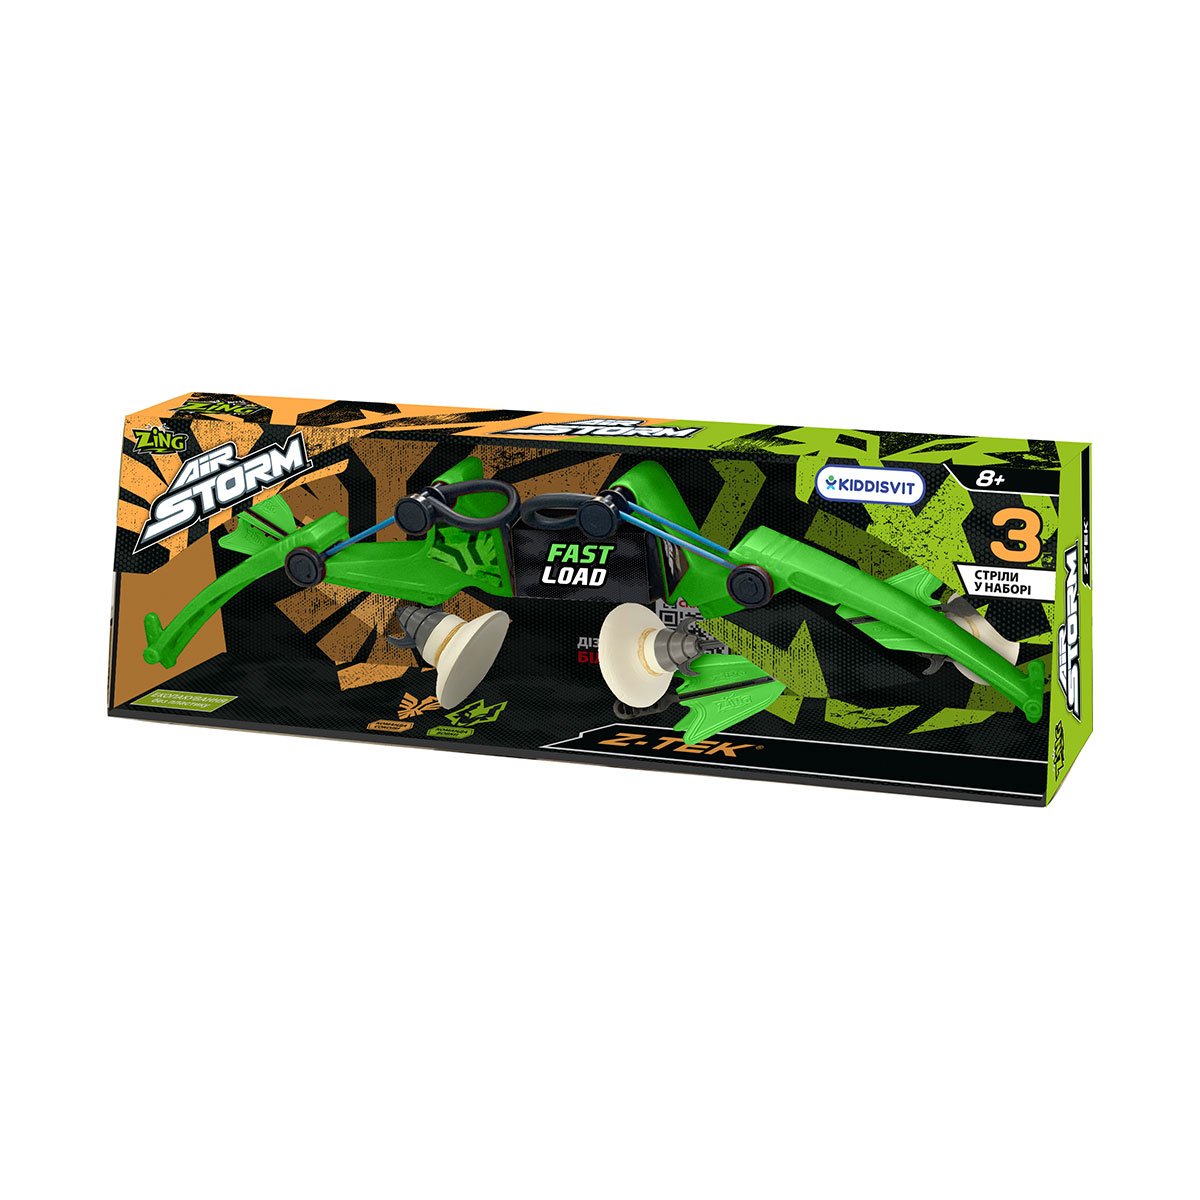 Іграшковий лук Zing Air Storm Z-Tек, зелений (AS979G) - фото 5